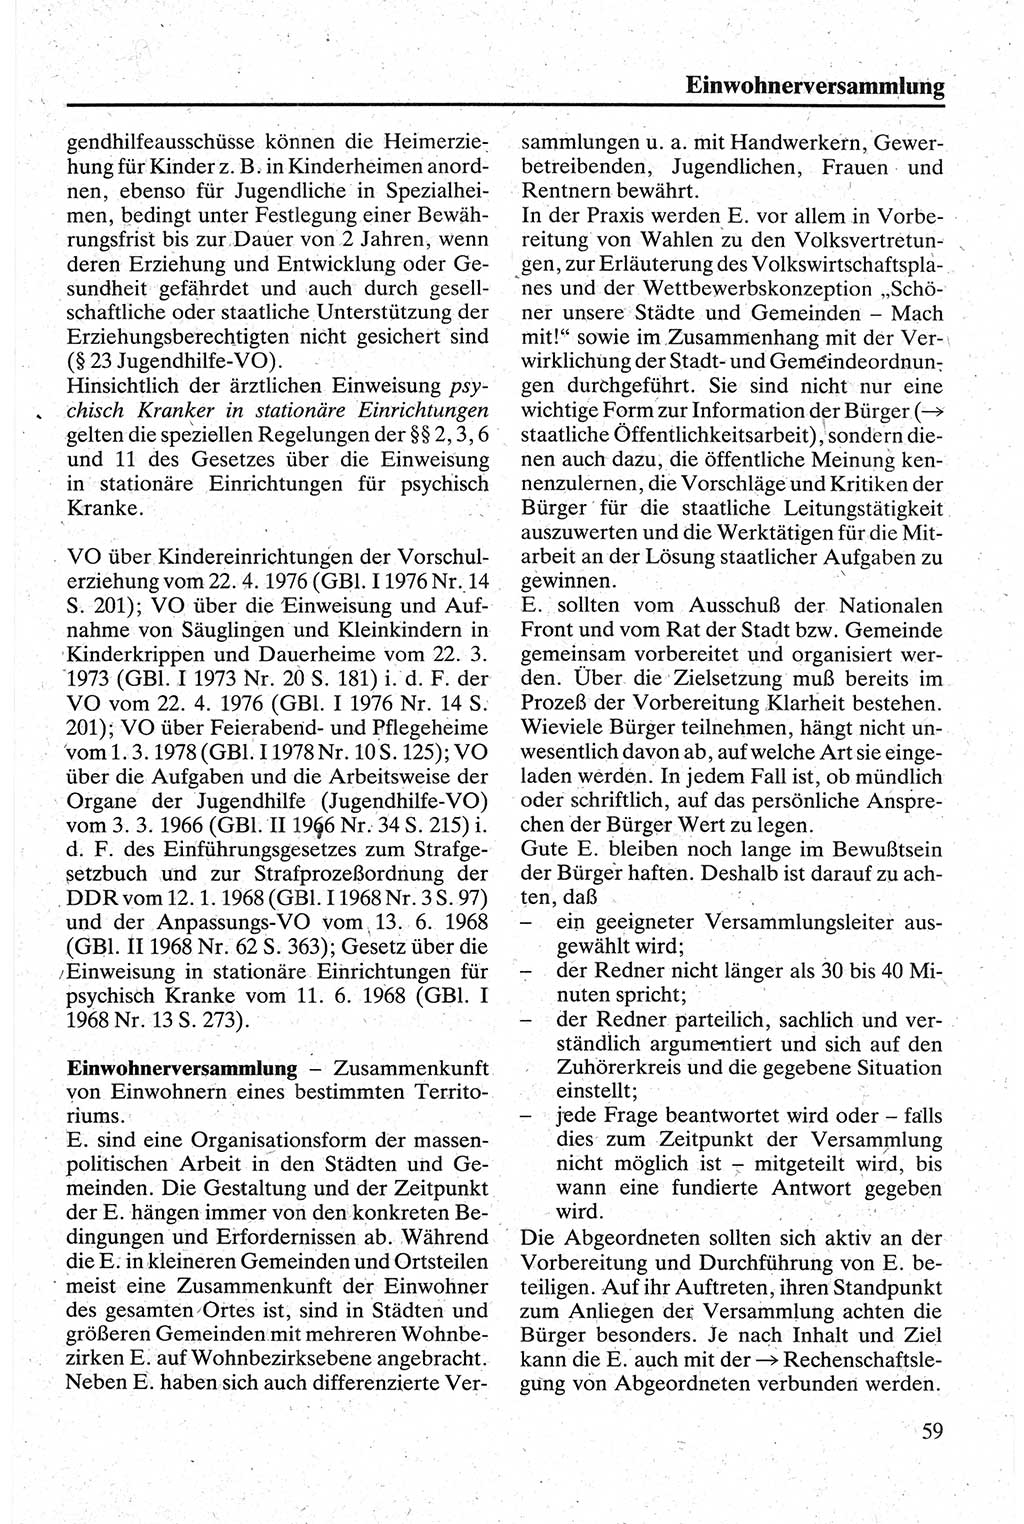 Handbuch für den Abgeordneten [Deutsche Demokratische Republik (DDR)] 1984, Seite 59 (Hb. Abg. DDR 1984, S. 59)